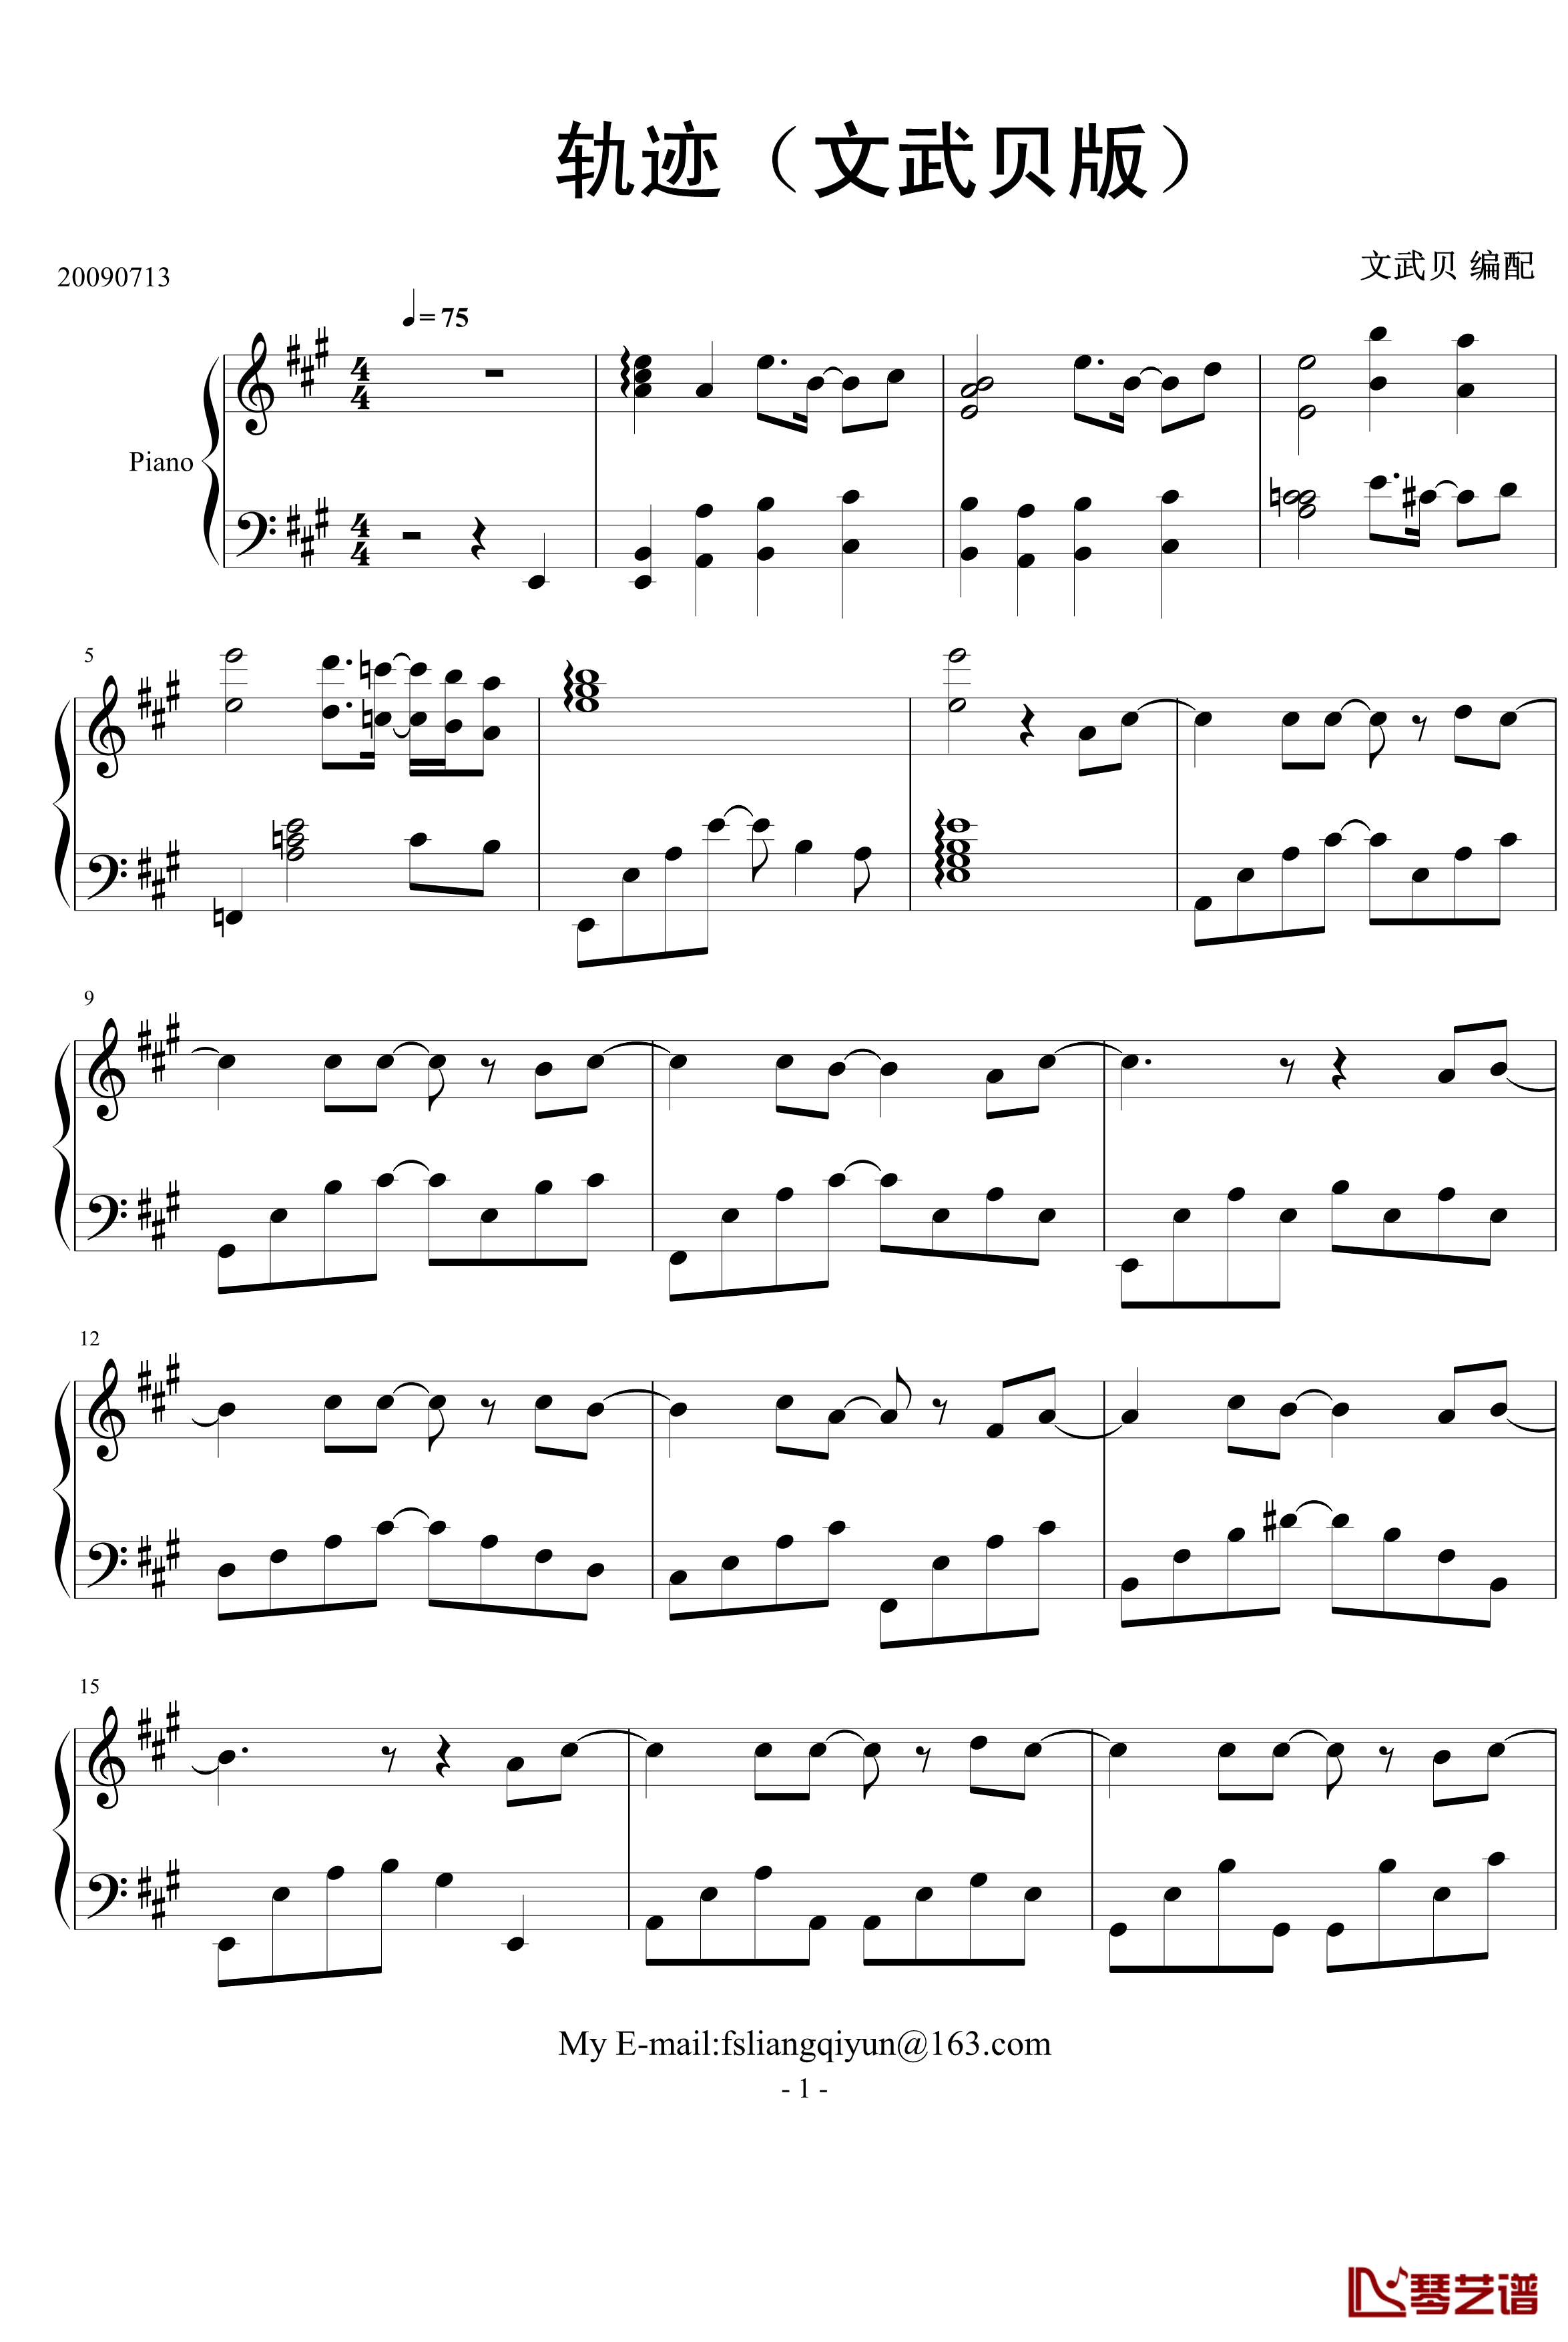 轨迹钢琴谱-文武贝版-周杰伦1